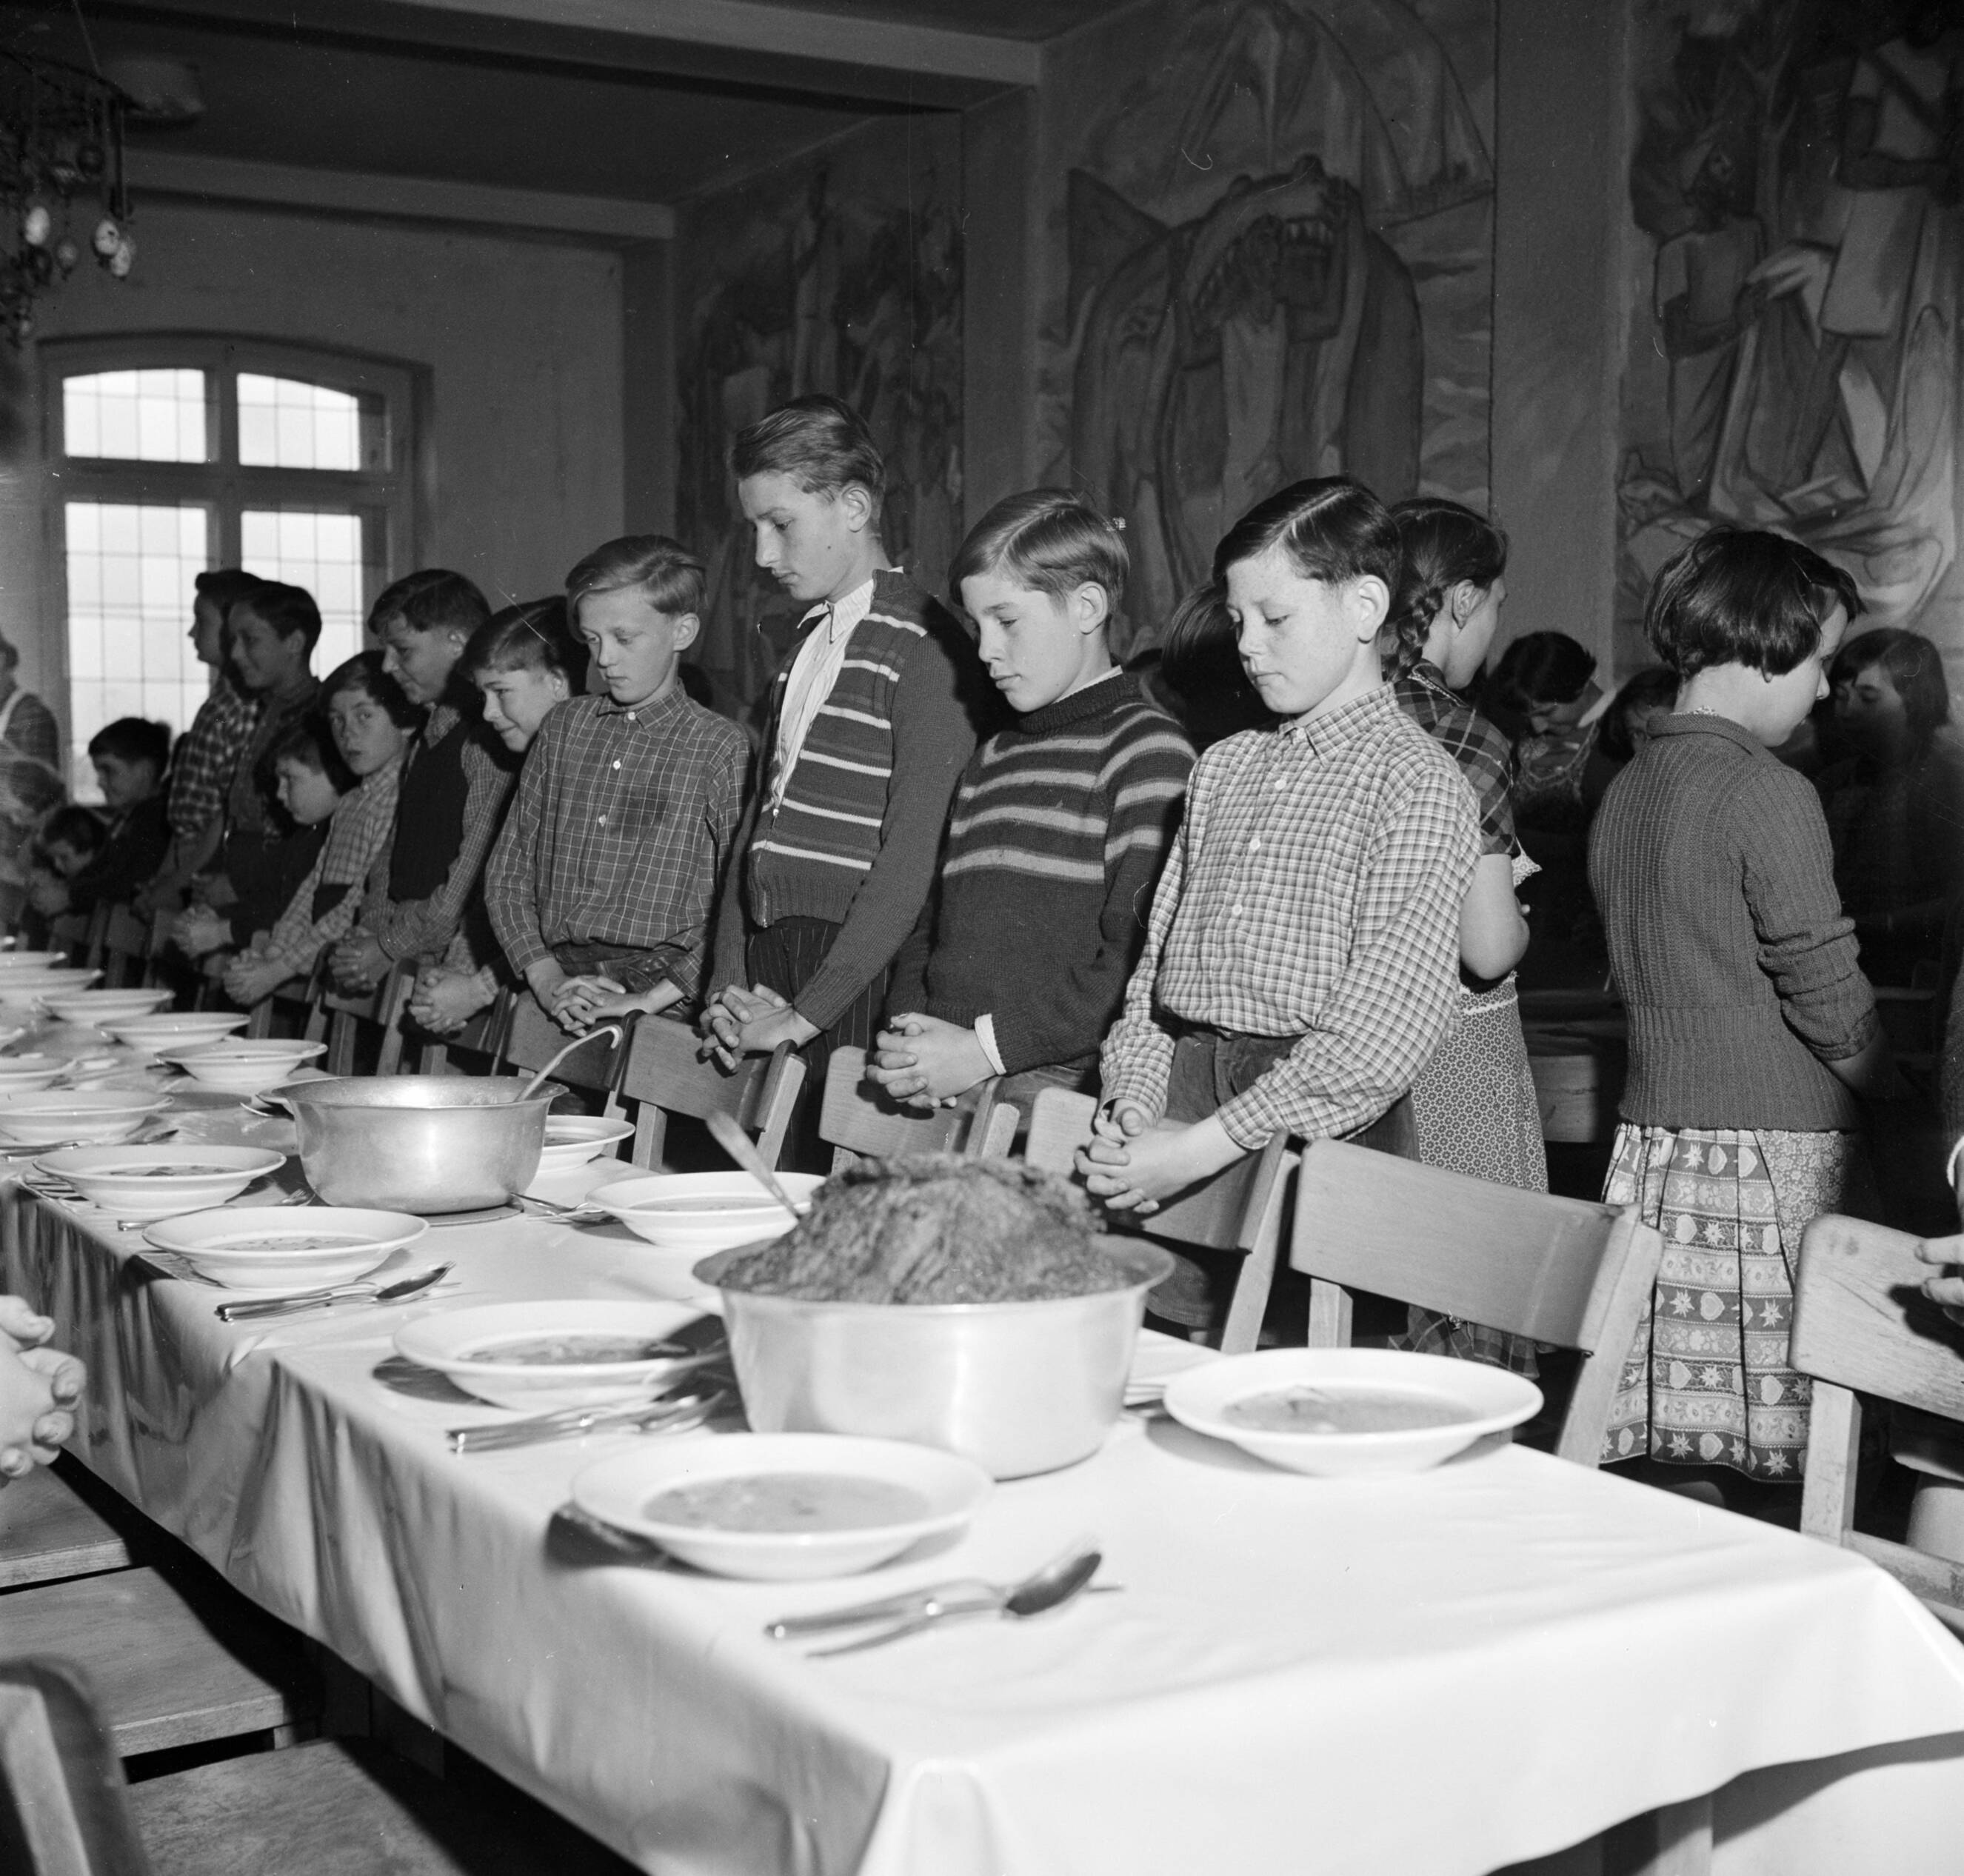 1955 - Schipperskinderen bidden voor het eten